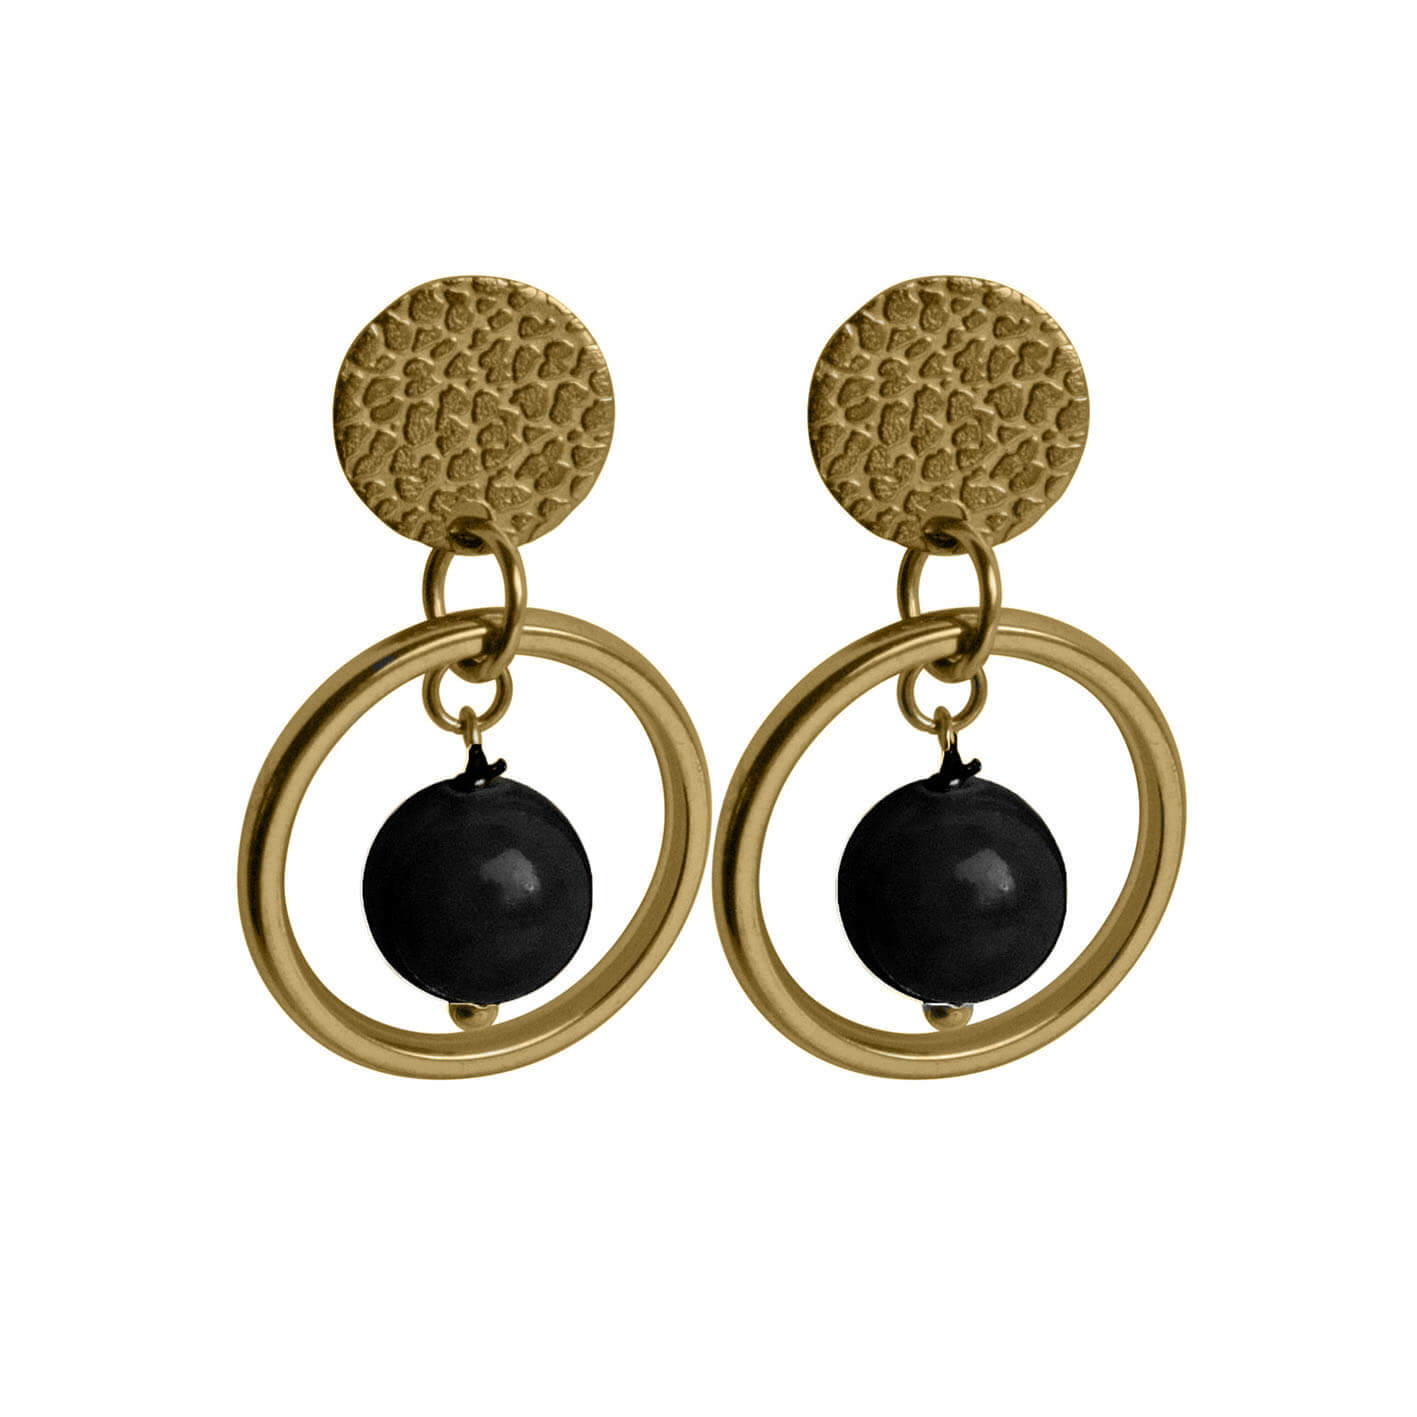 Harmonisch Madison Merchandiser Flow Jewels Hang Oorbellen Arya Zwart Steentje Goud | Shop Online